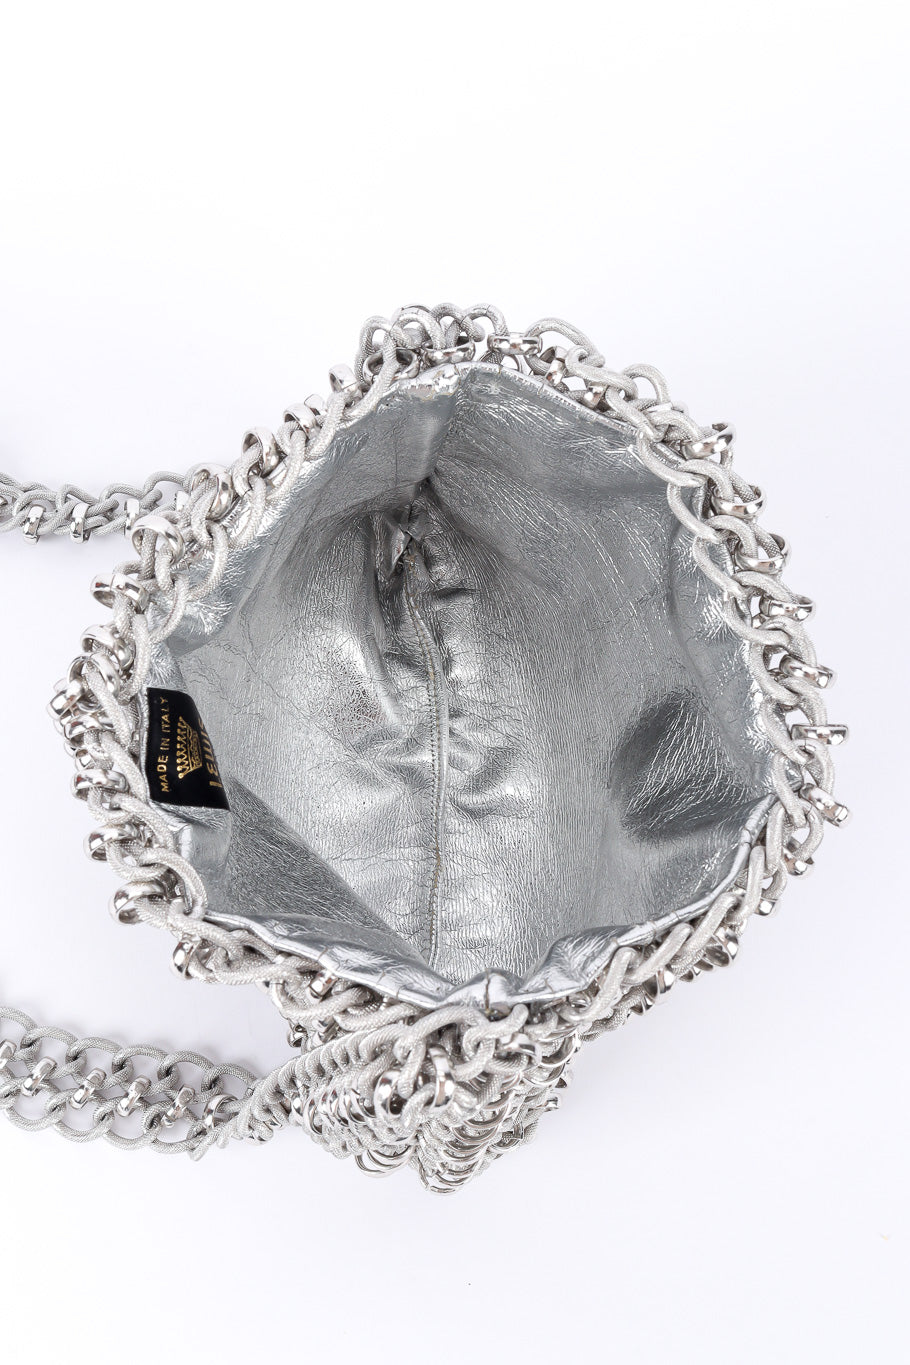 chainlink shoulder bag by Lewis lining @recessla